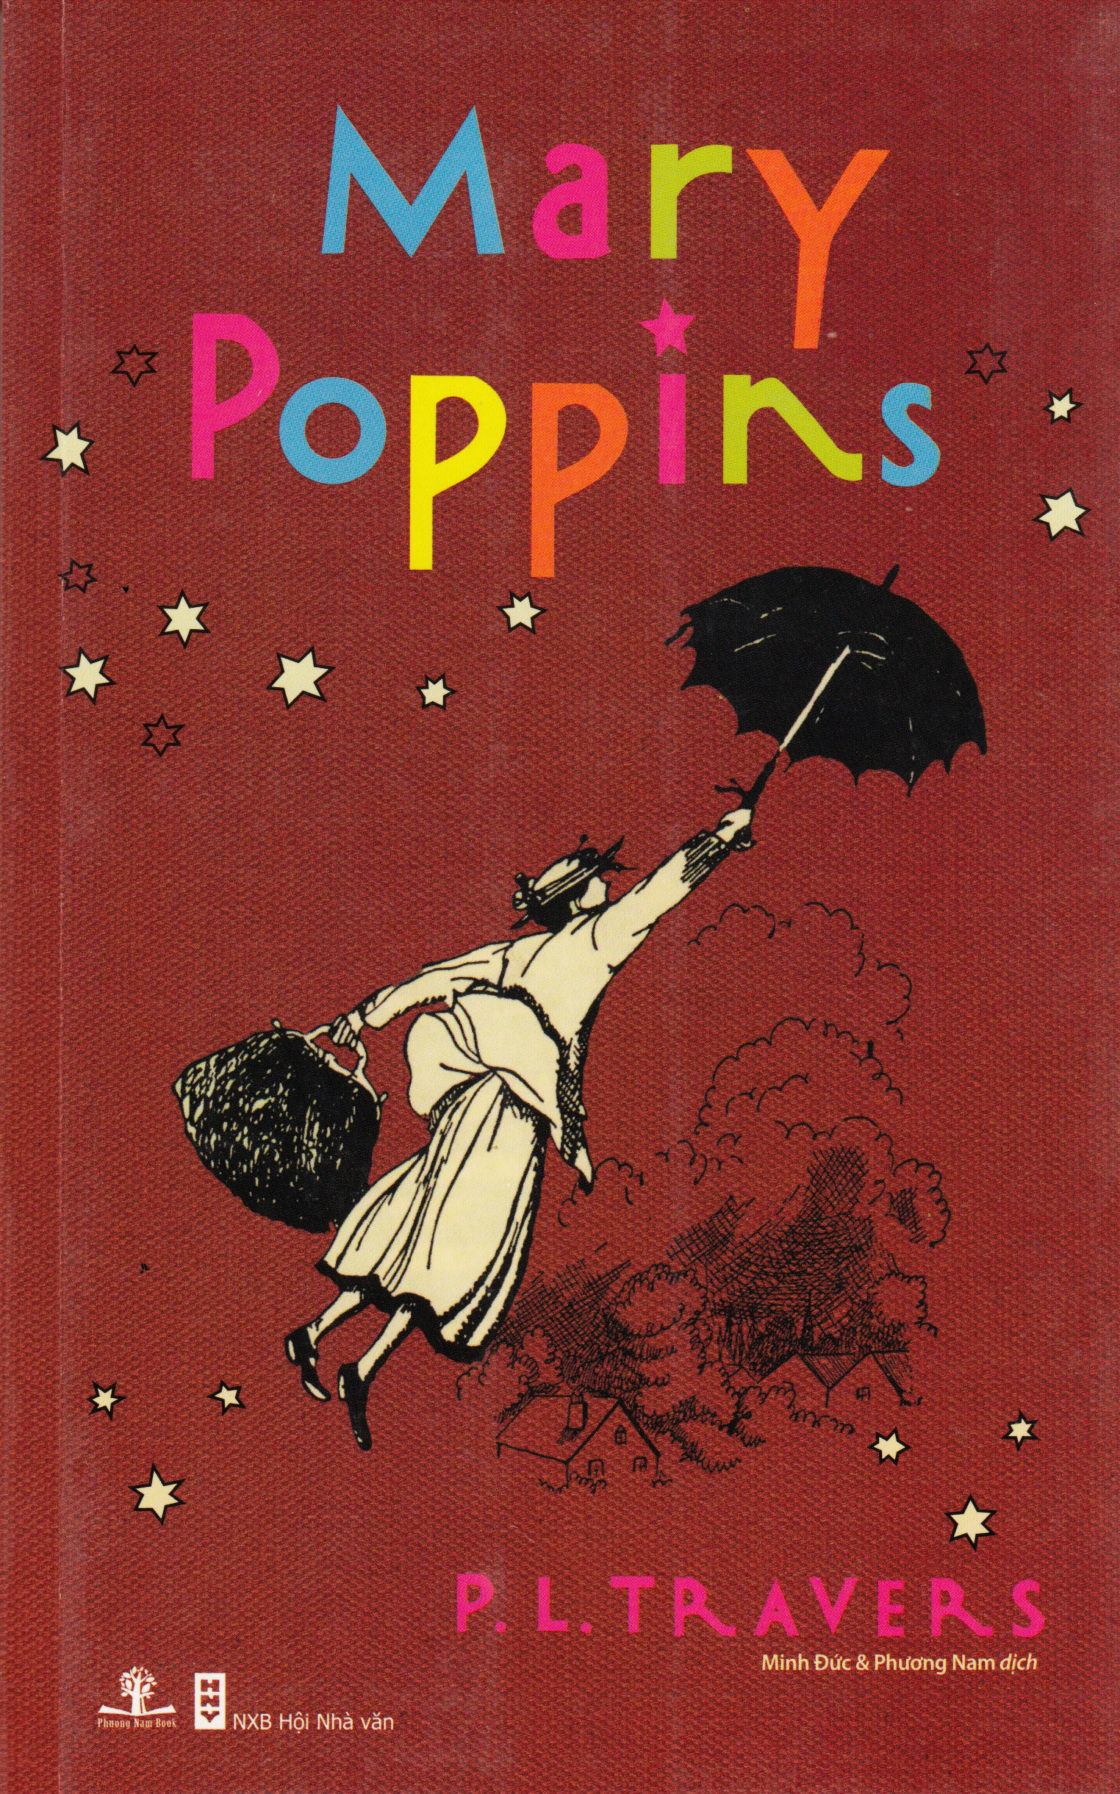 Mary Poppins (Vietnamese)